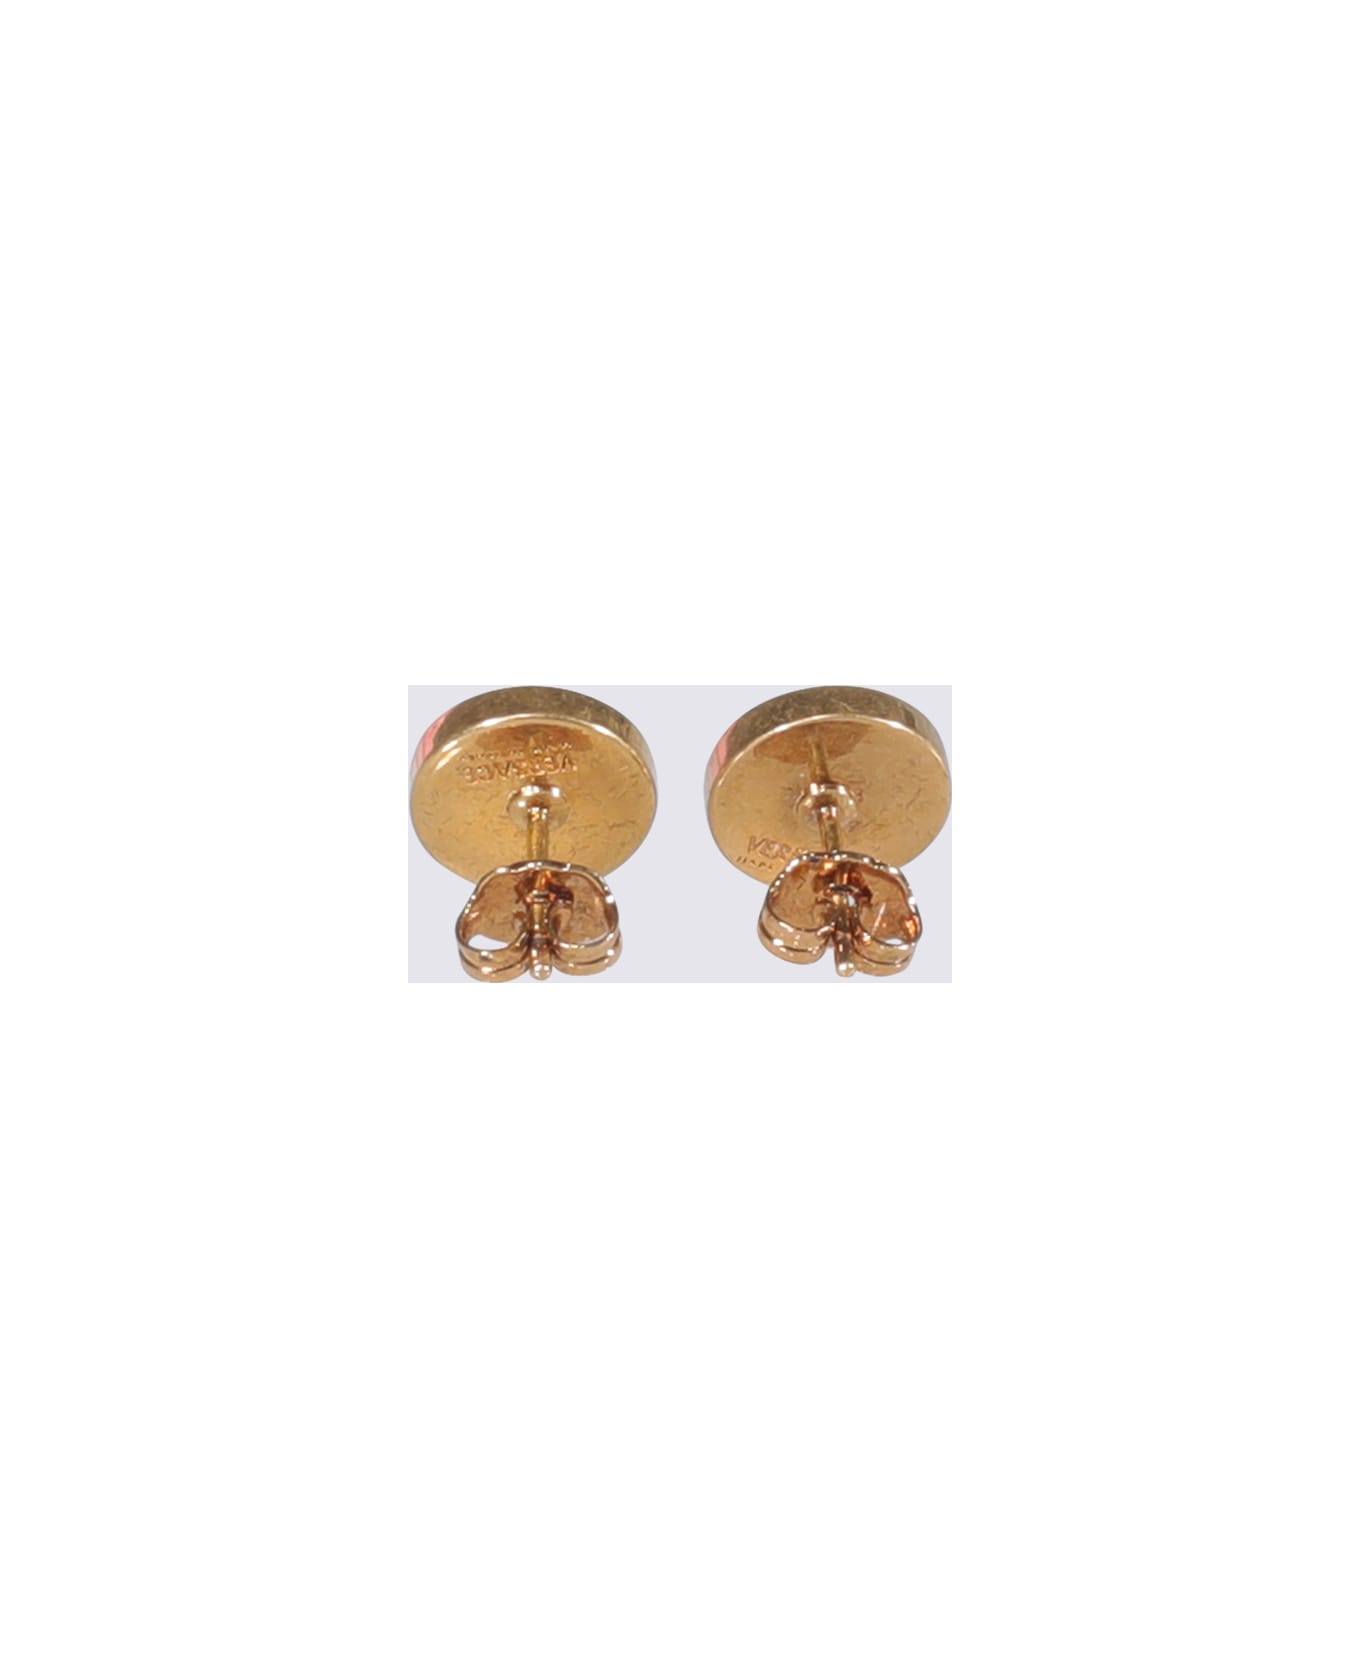 Versace Medusa Enameled Stud Earrings - GOLD